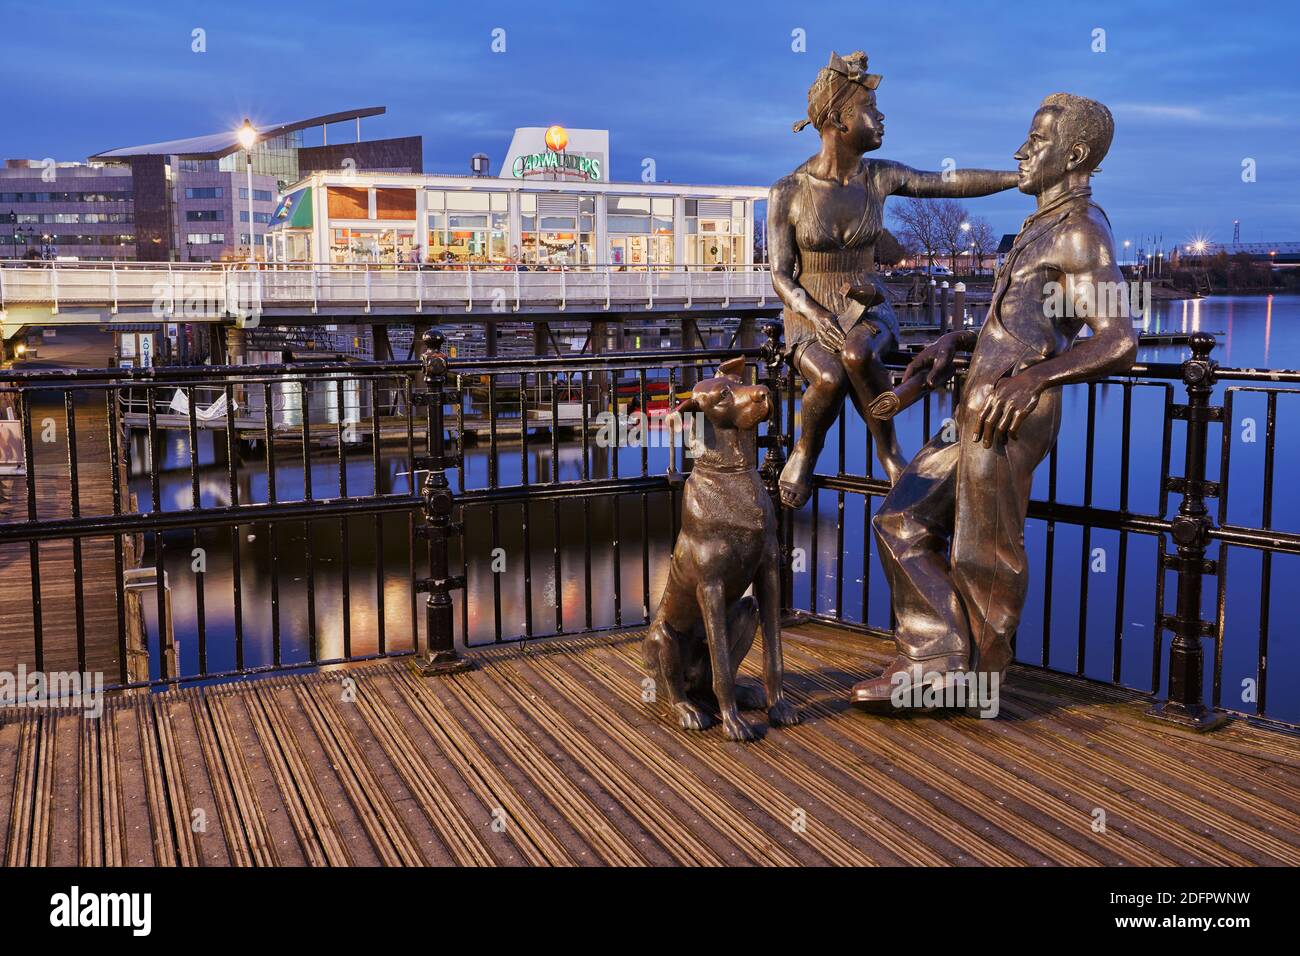 Les gens comme nous sculptaient sur le quai Mermaid dans la baie de Cardiff, au début de la soirée de décembre. La sculpture représente un couple immigré typique. Banque D'Images